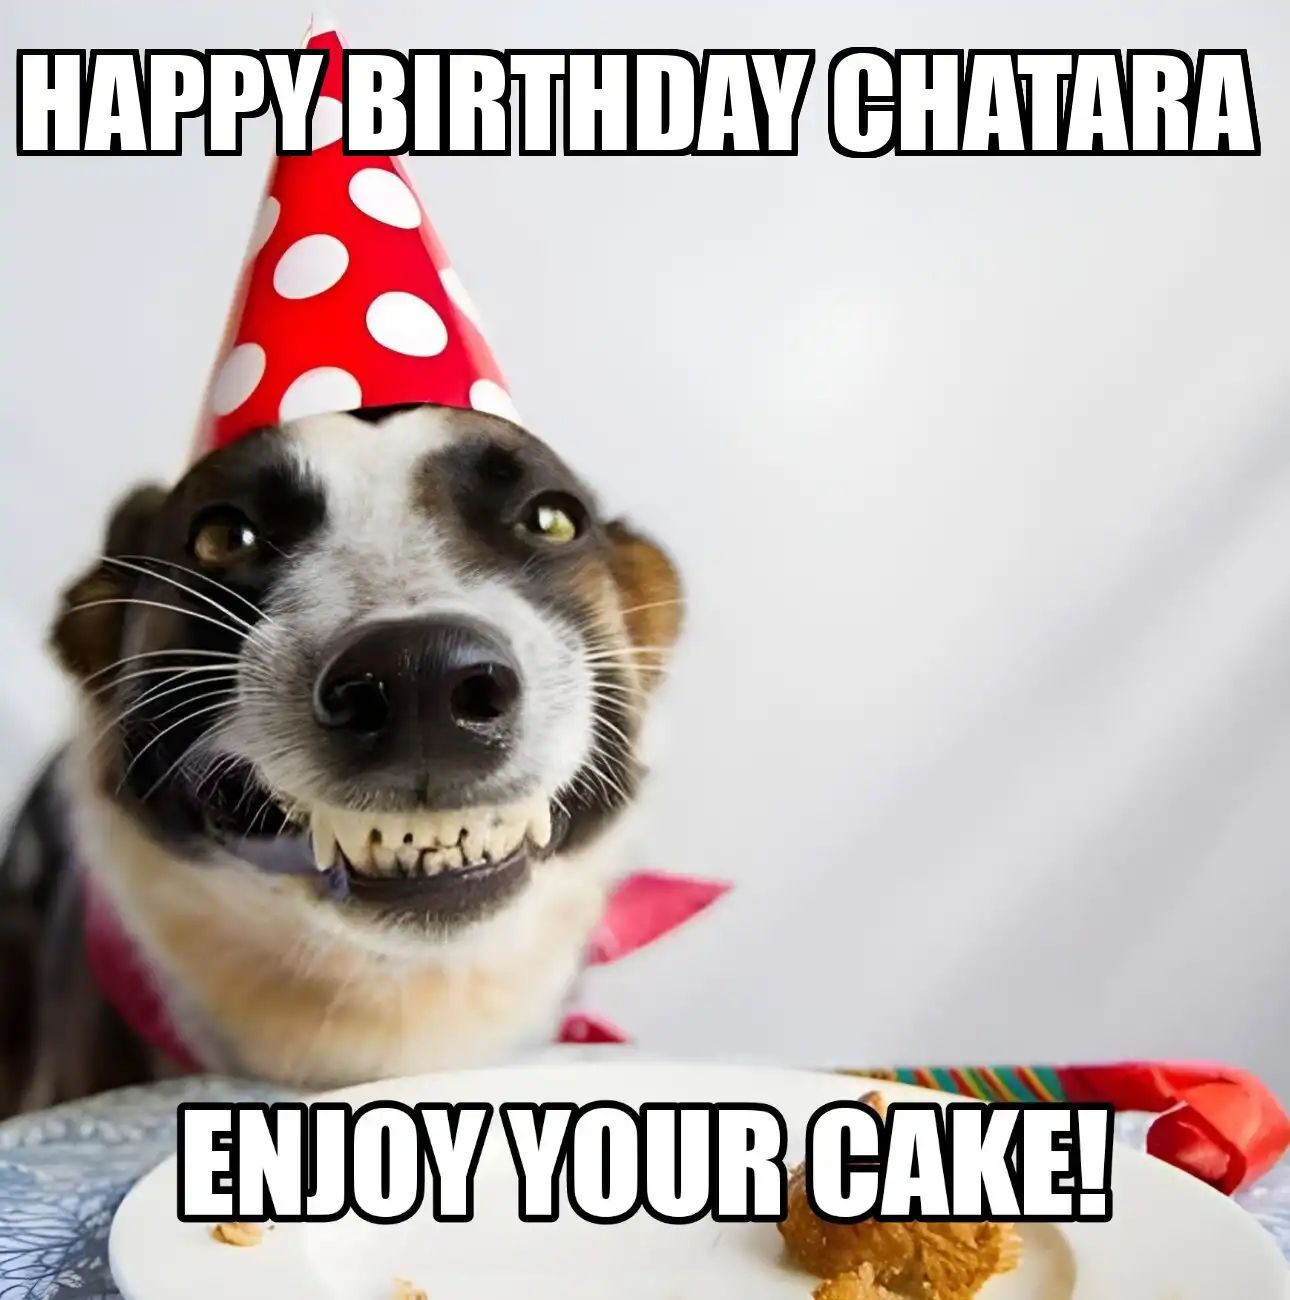 Happy Birthday Chatara Enjoy Your Cake Dog Meme